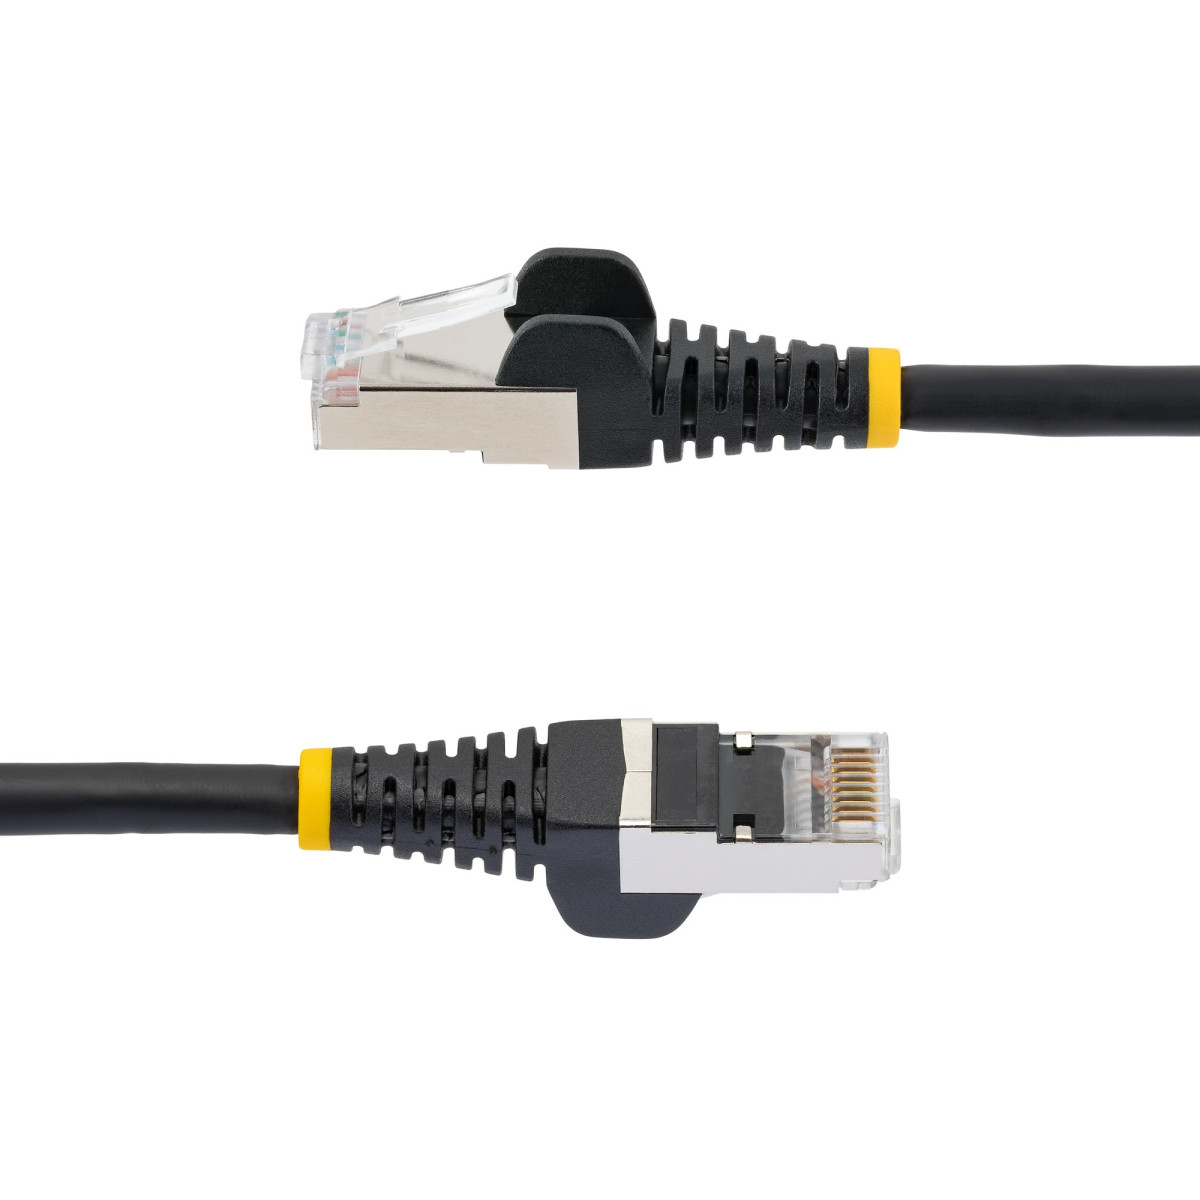 10m LSZH CAT6a Ethernet Cable - Black